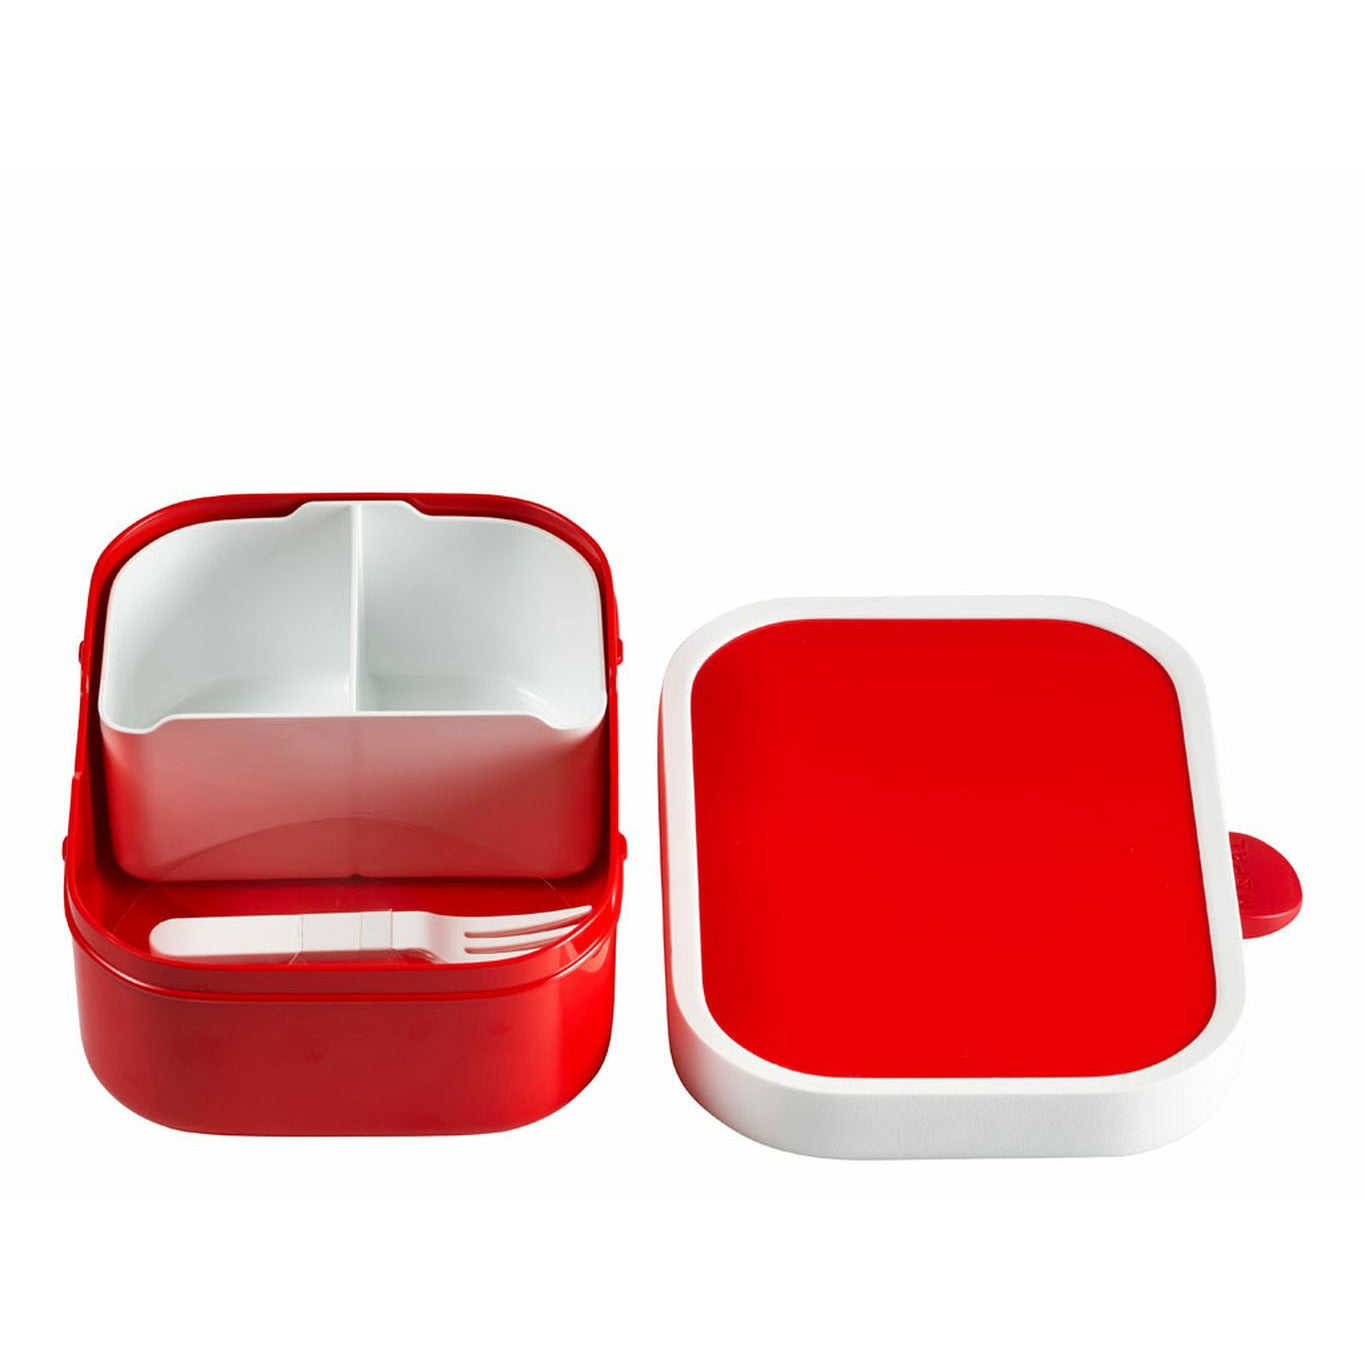 Mepal obědová krabička areál s vložkou Bento, červená